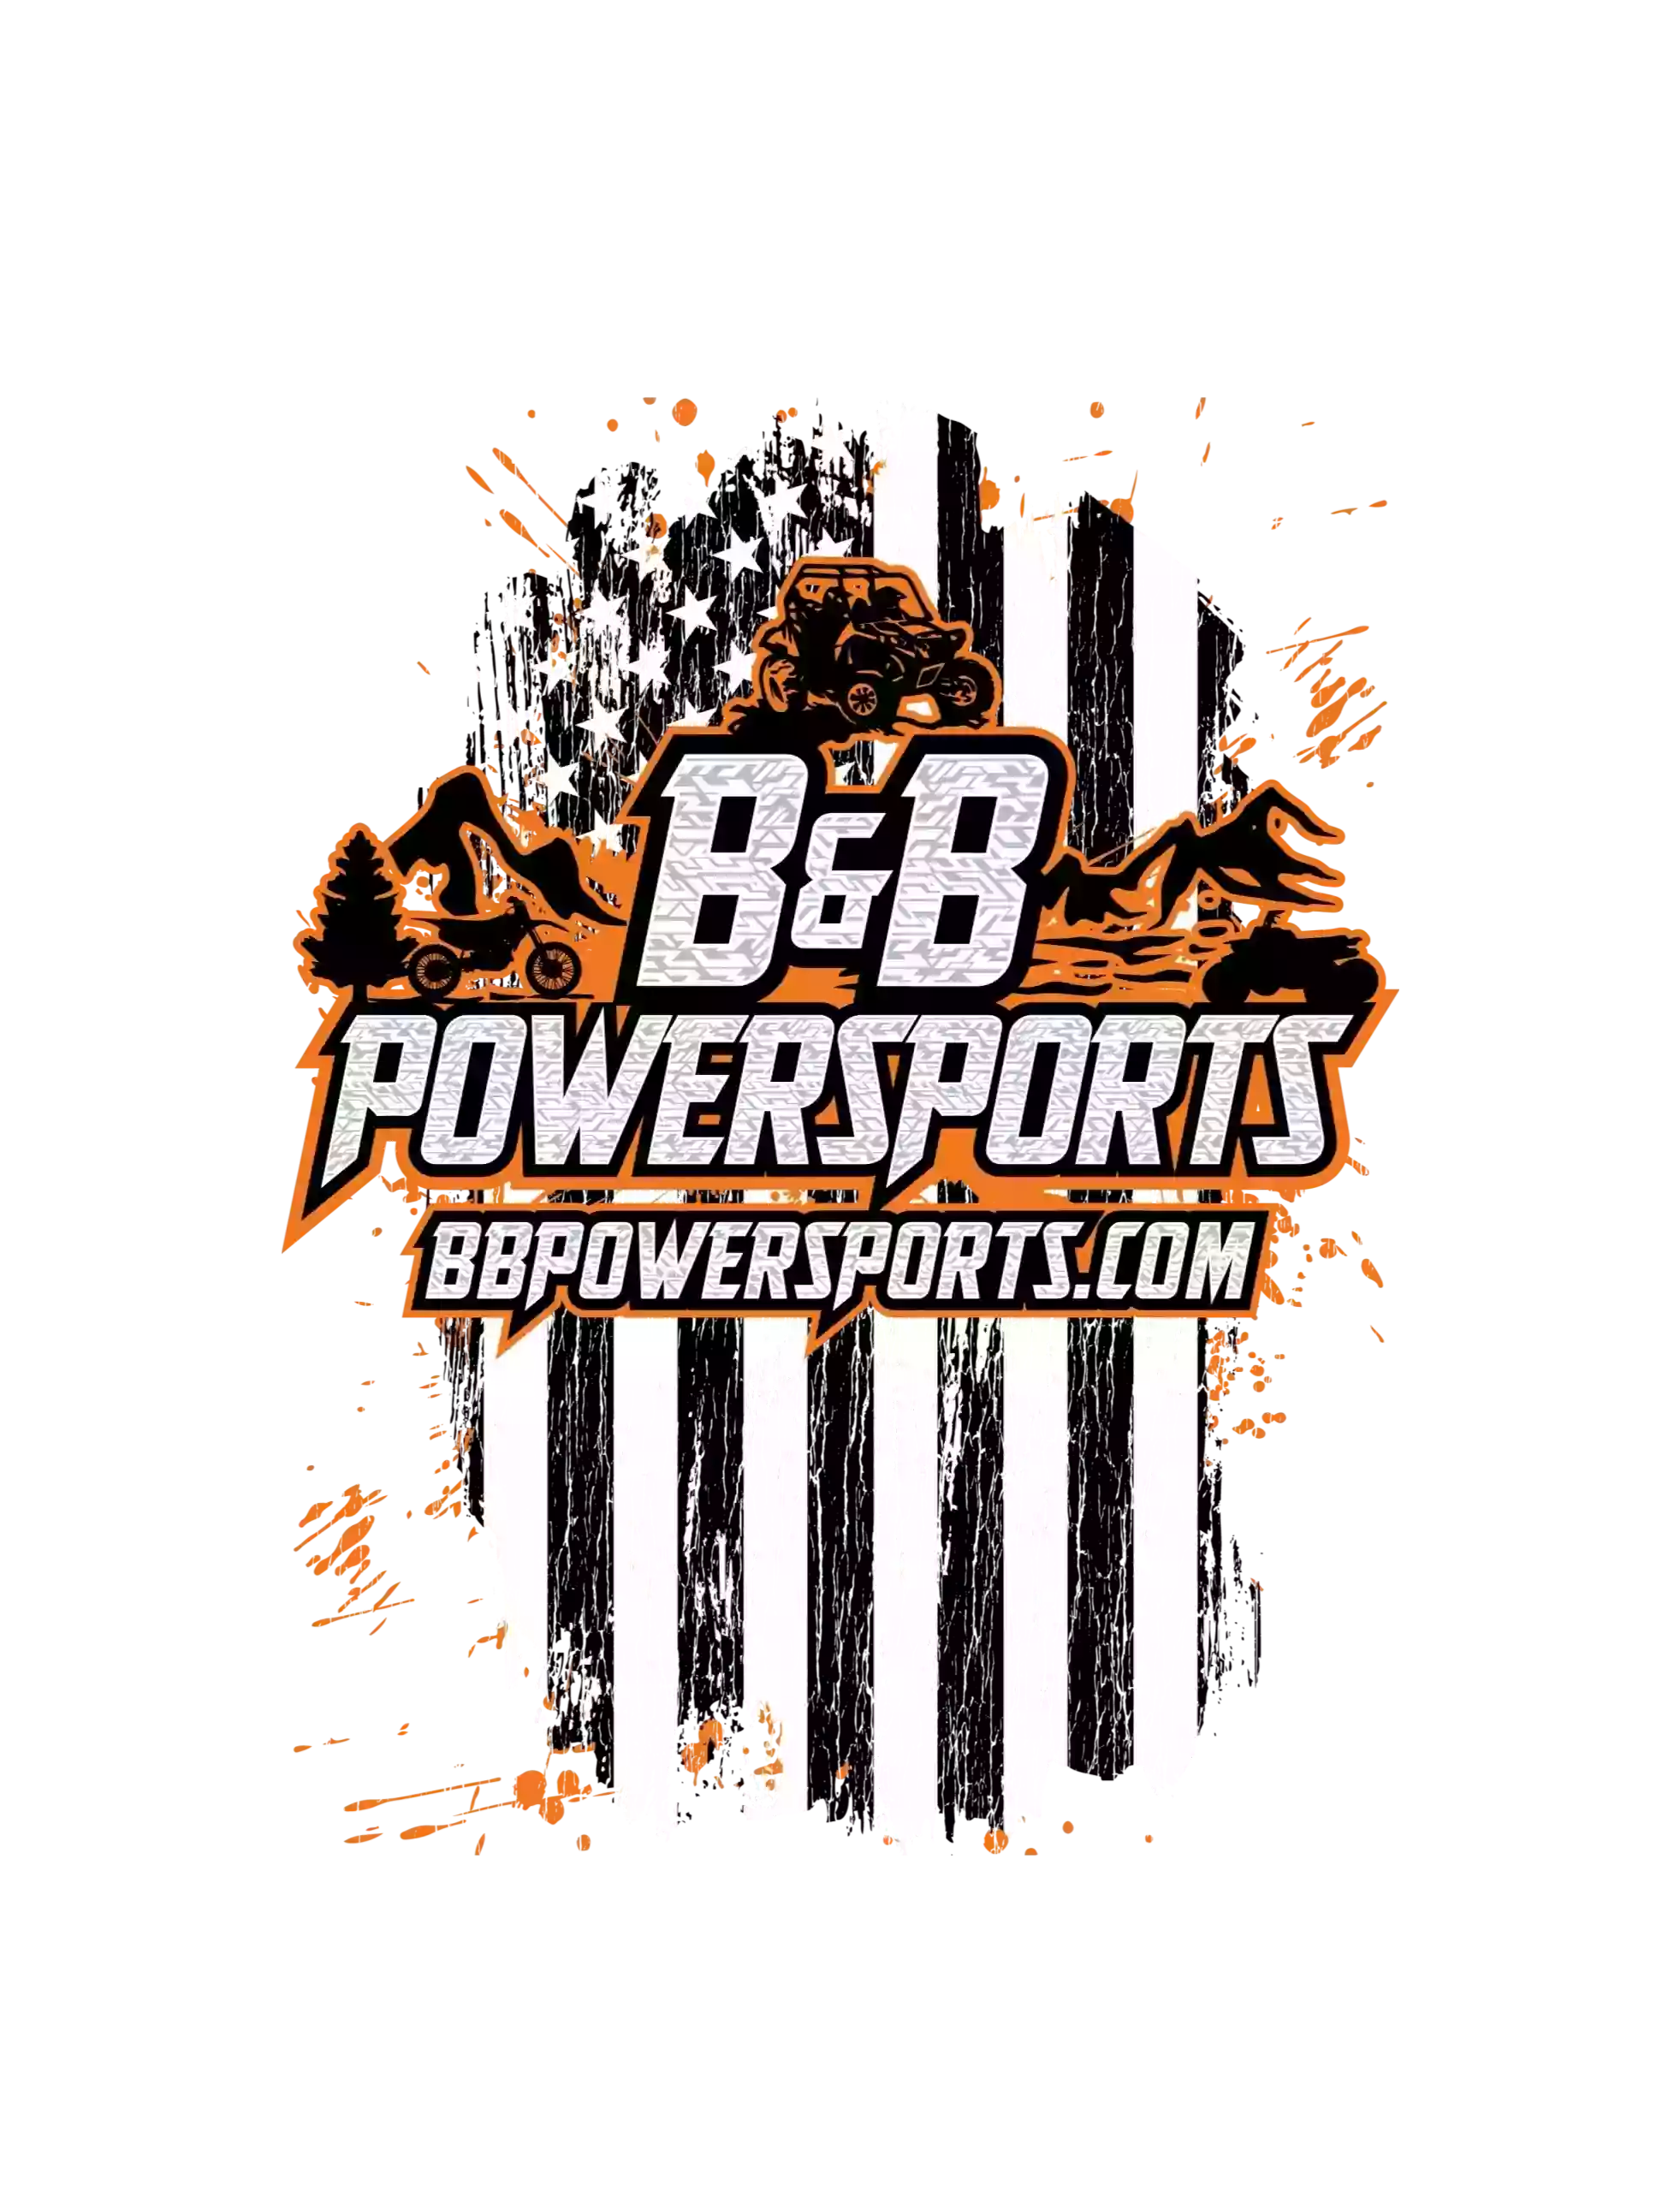 B&B Powersports LLC